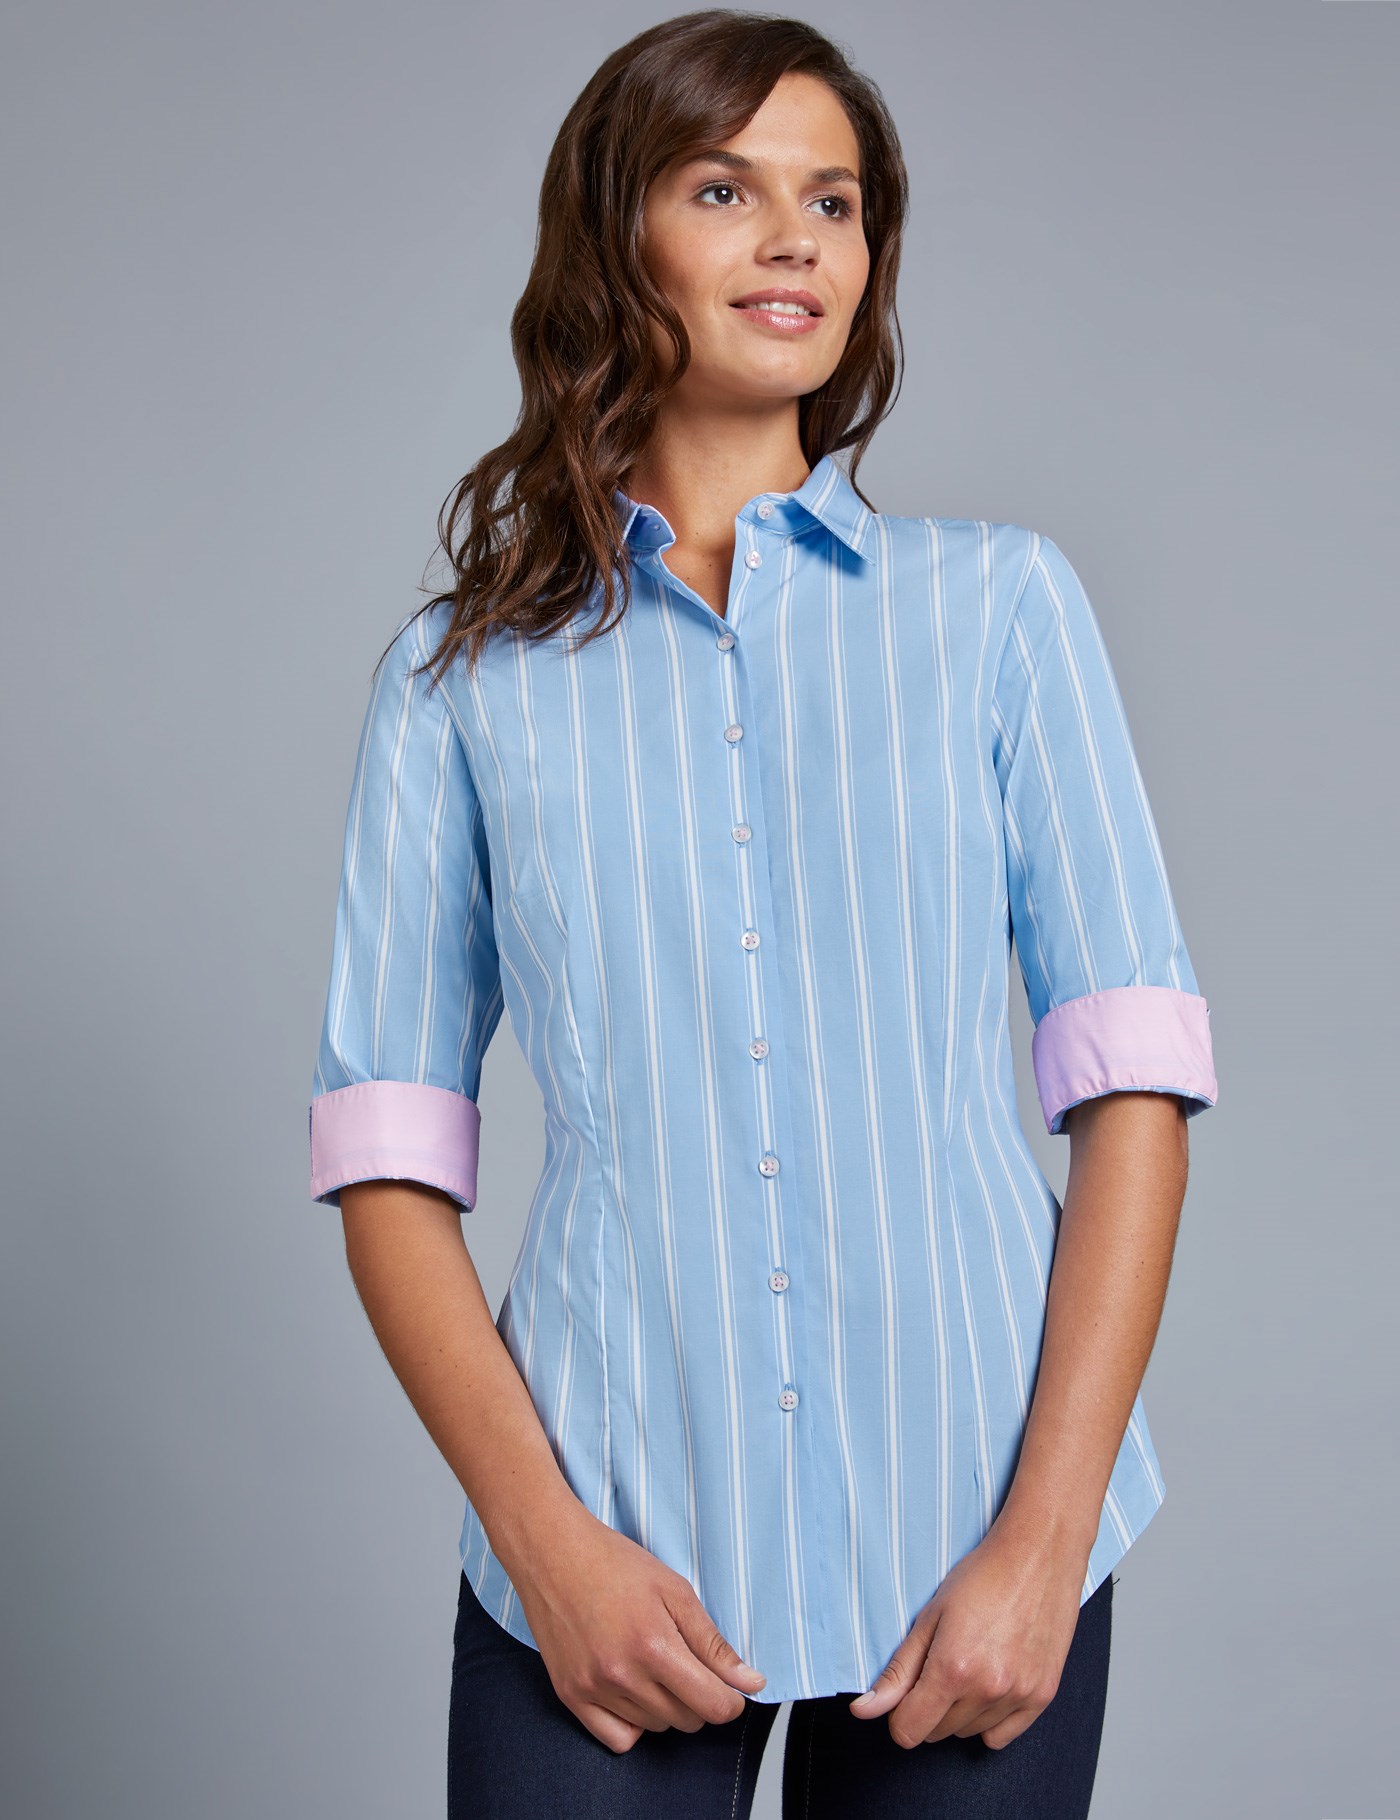 Women's Blue & White Multi Stripe Fitted Shirt - 3 Quarter Sleeve